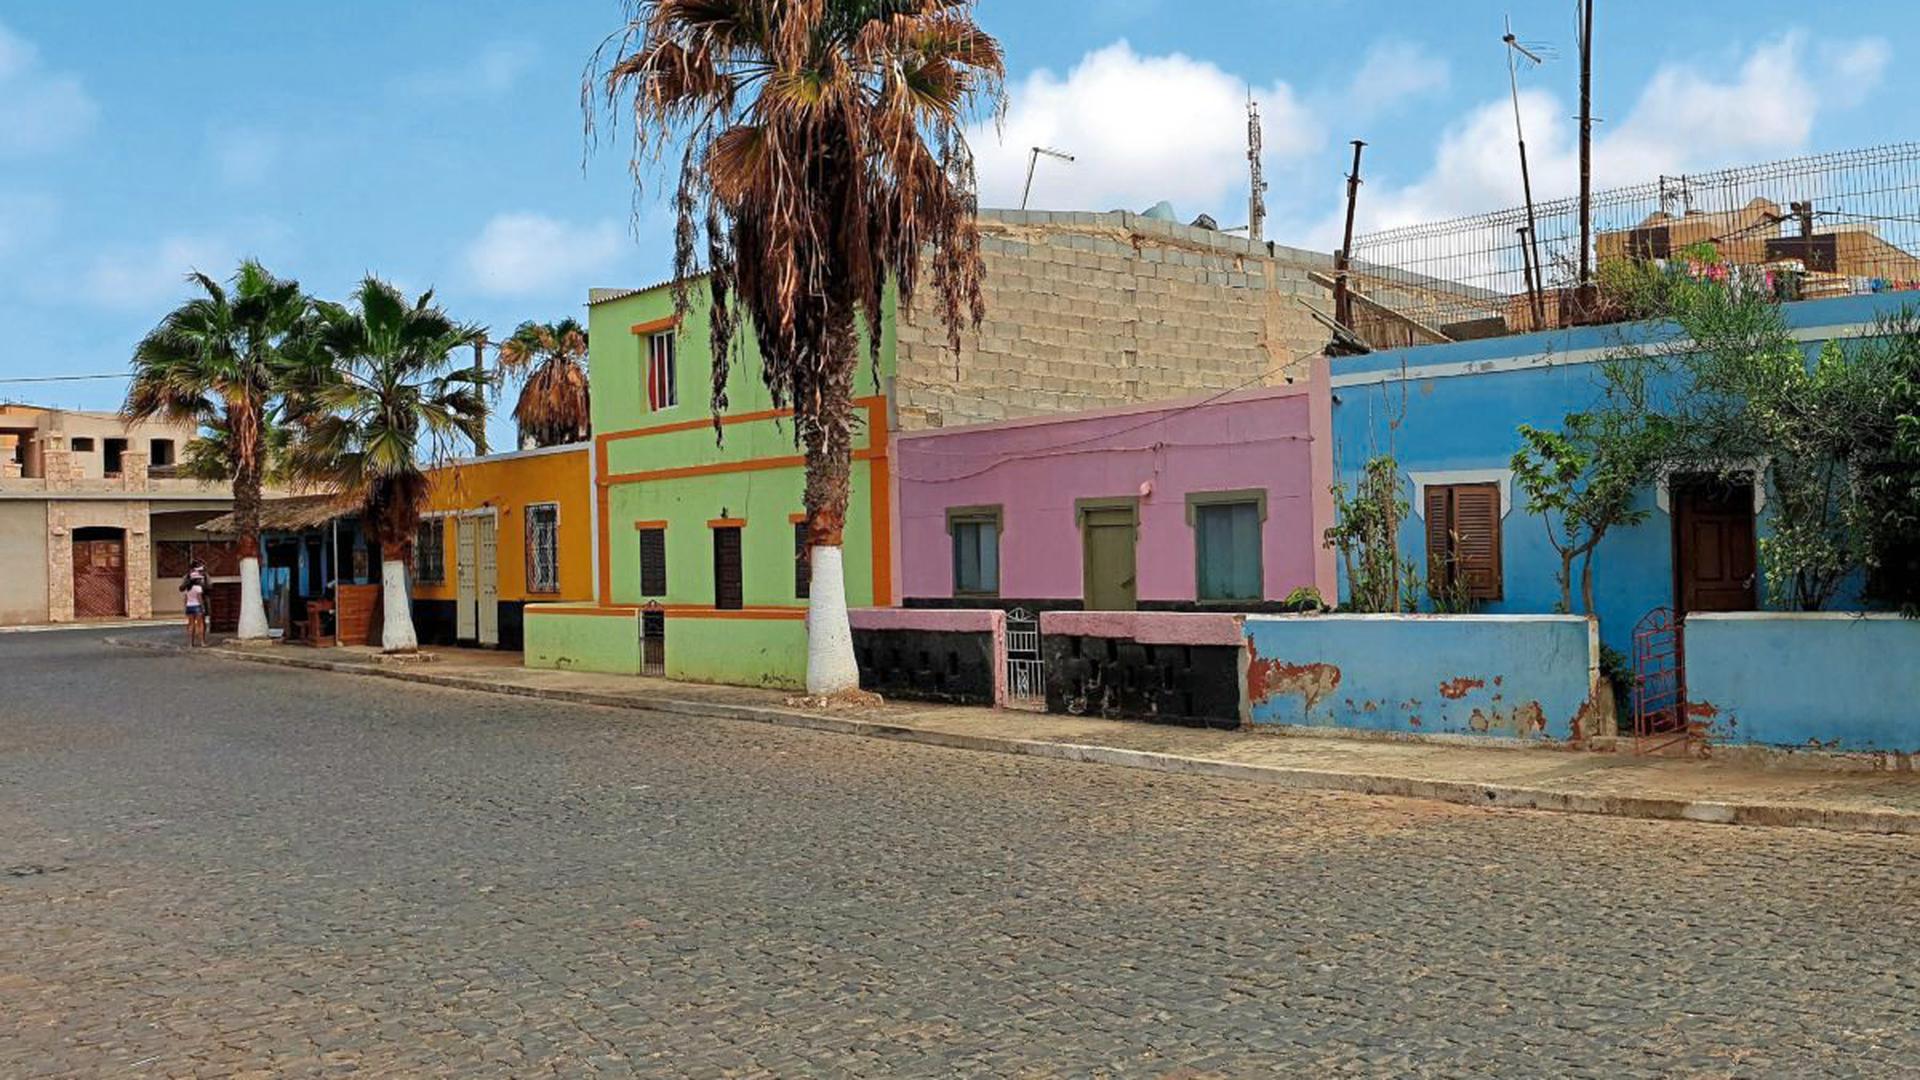 Alles so schön bunt hier: Häuser in der Hafenstadt Palmeira auf der Kapverden-Insel Sal.